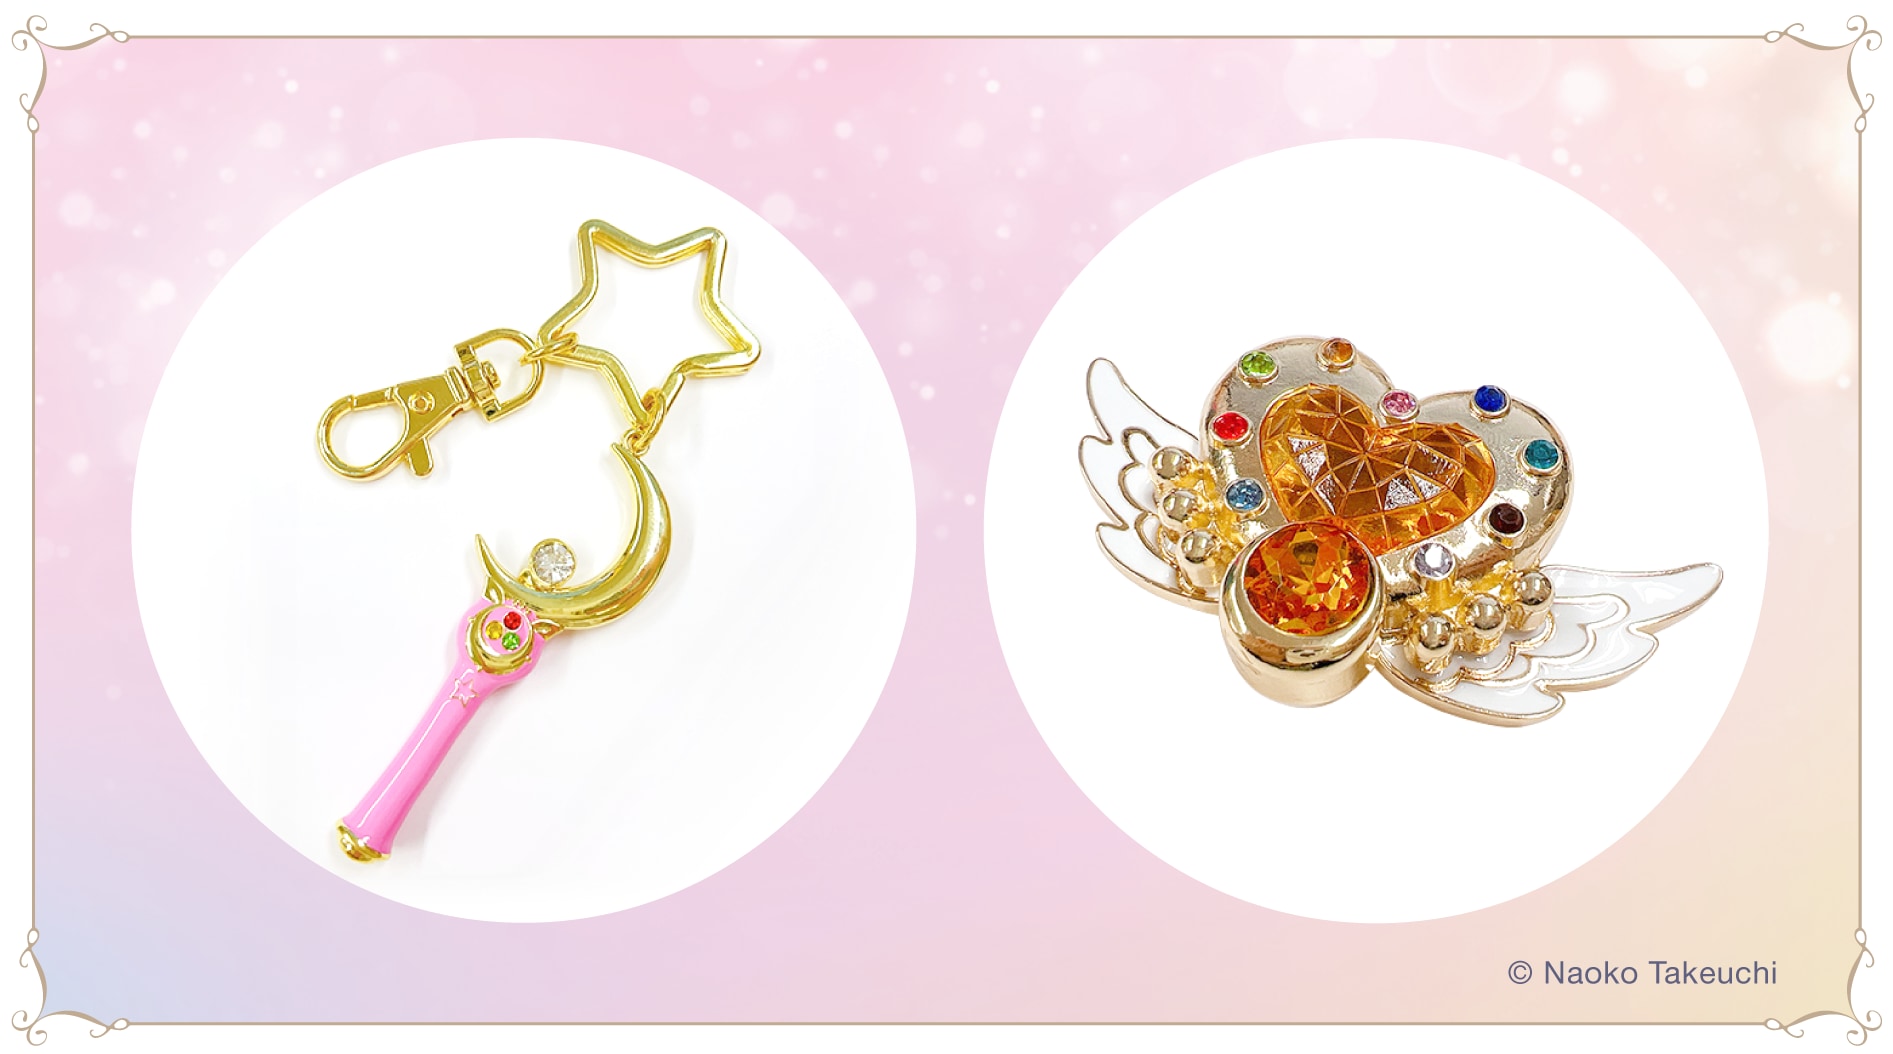 「美少女戦士セーラームーン ミュージアム大阪展」「Sailor Moon store」オリジナルグッズセット